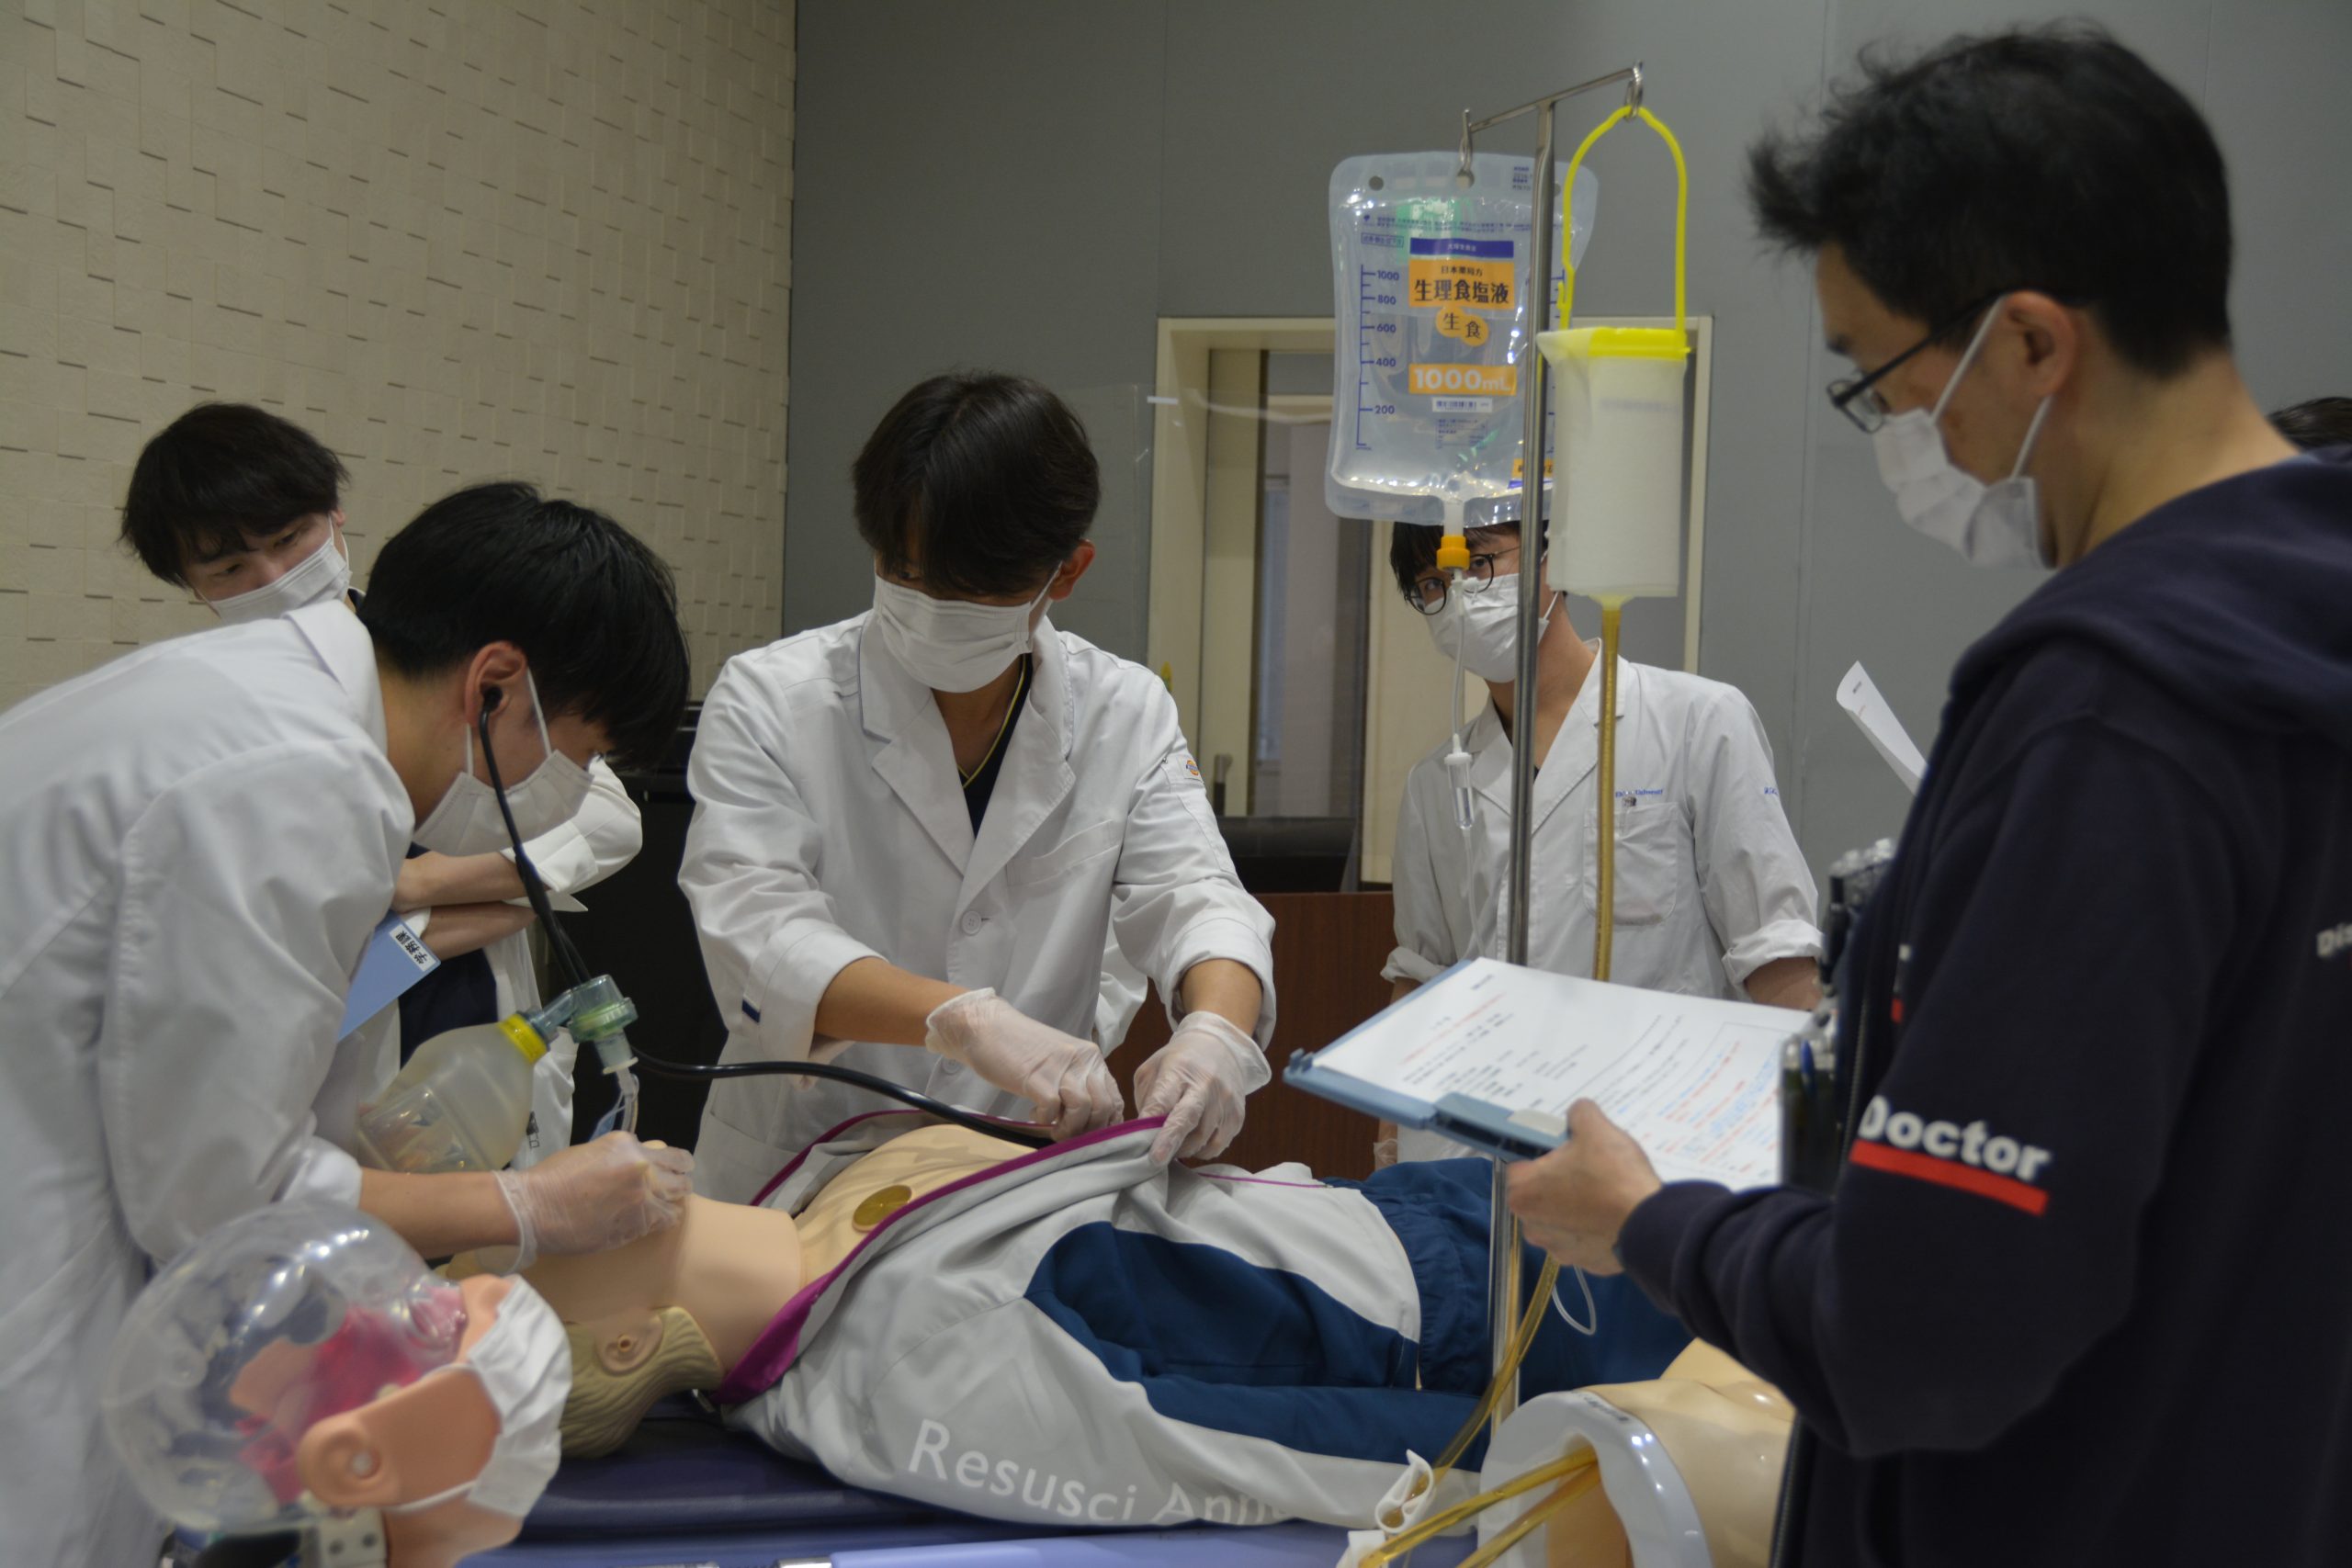 第２回愛媛大学医学部シミュリンピック大会を開催しました